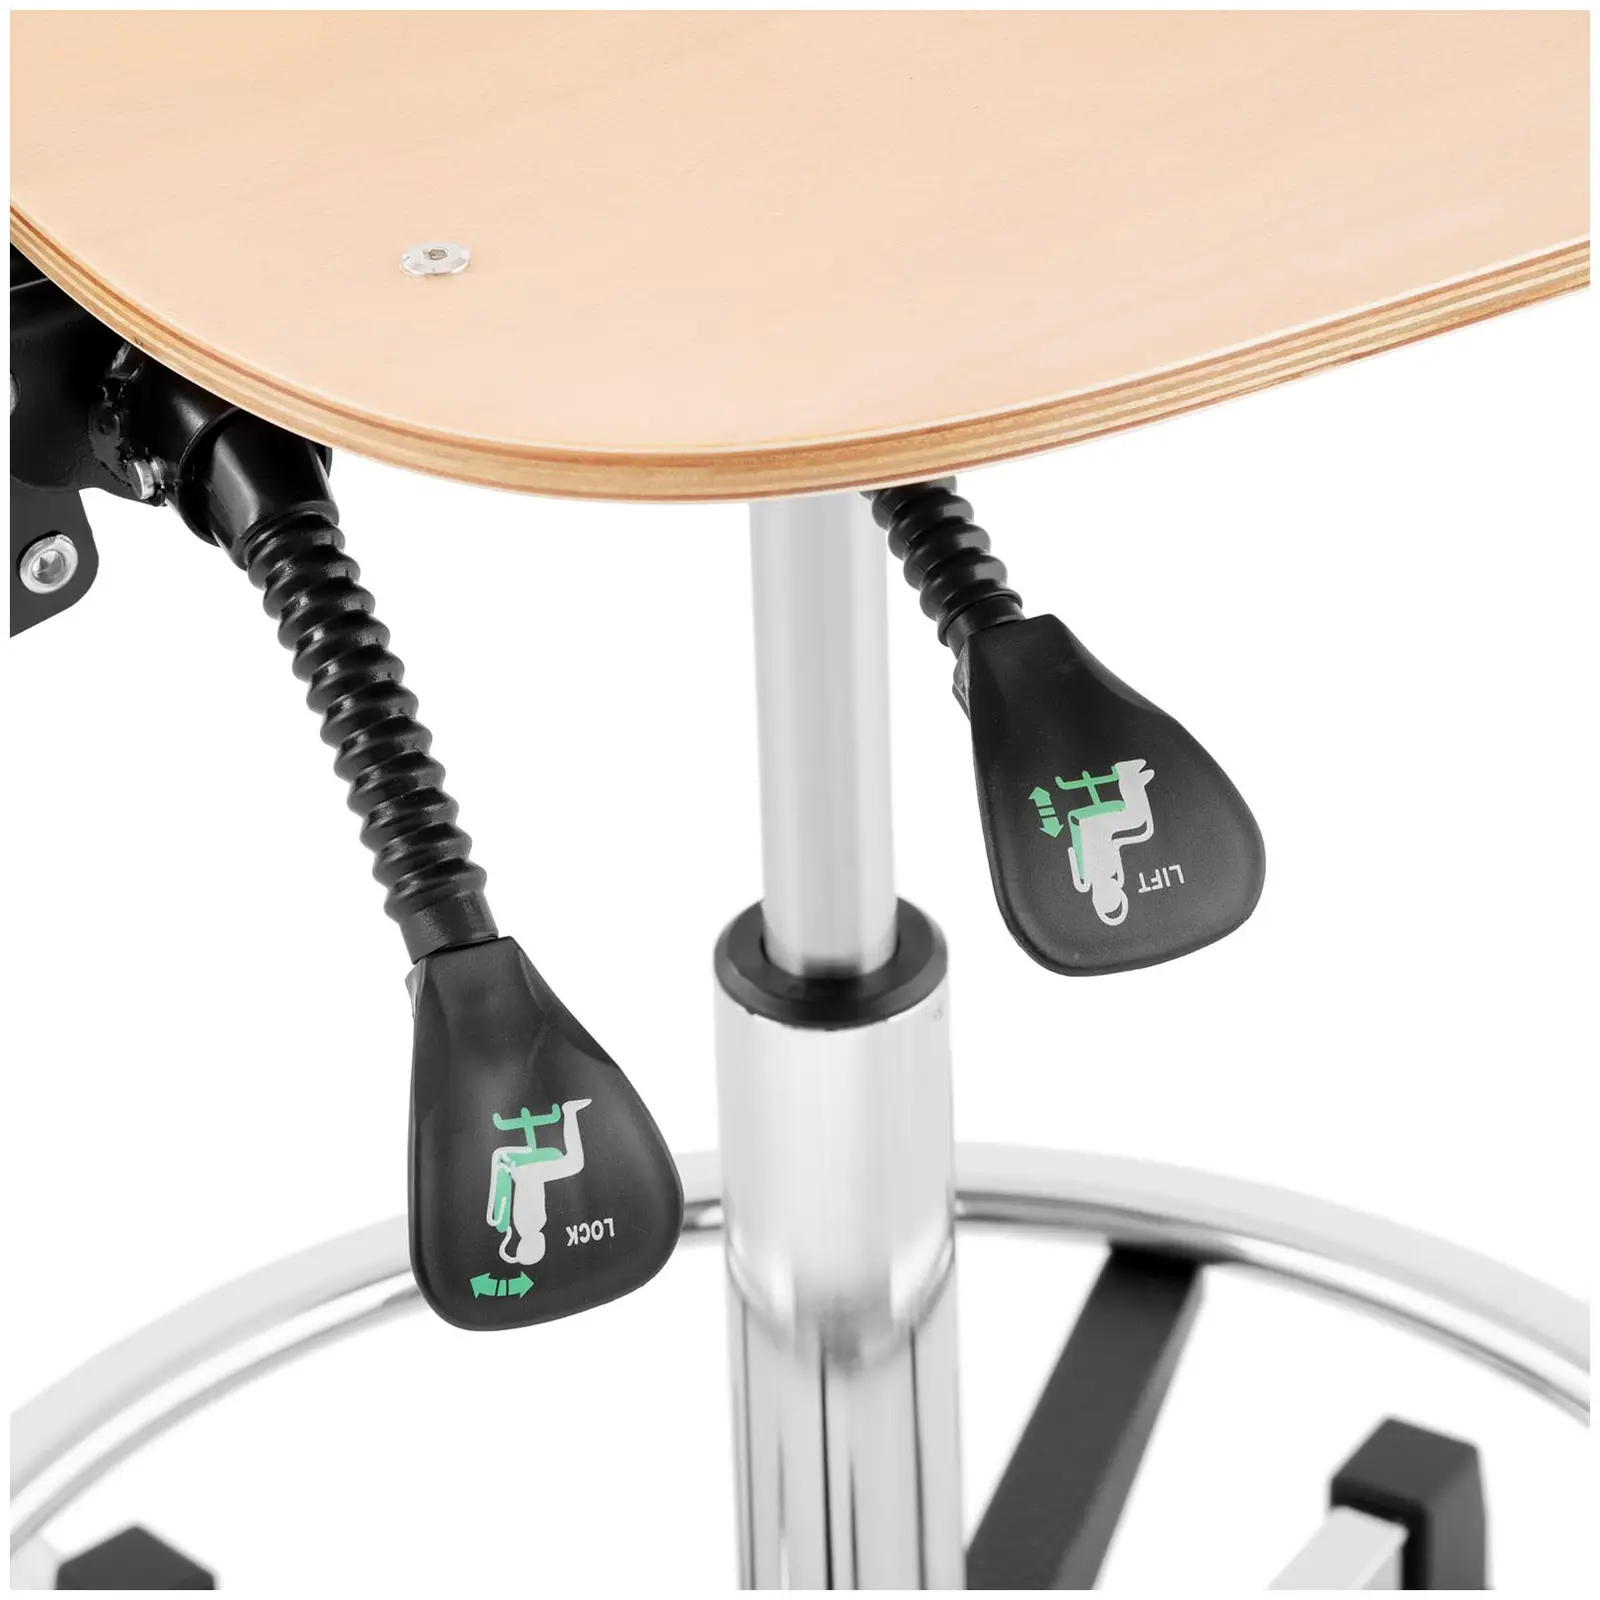 Delovni stol - 120 kg - krom, les - obroč za noge - nastavljiva višina od 550 do 800 mm